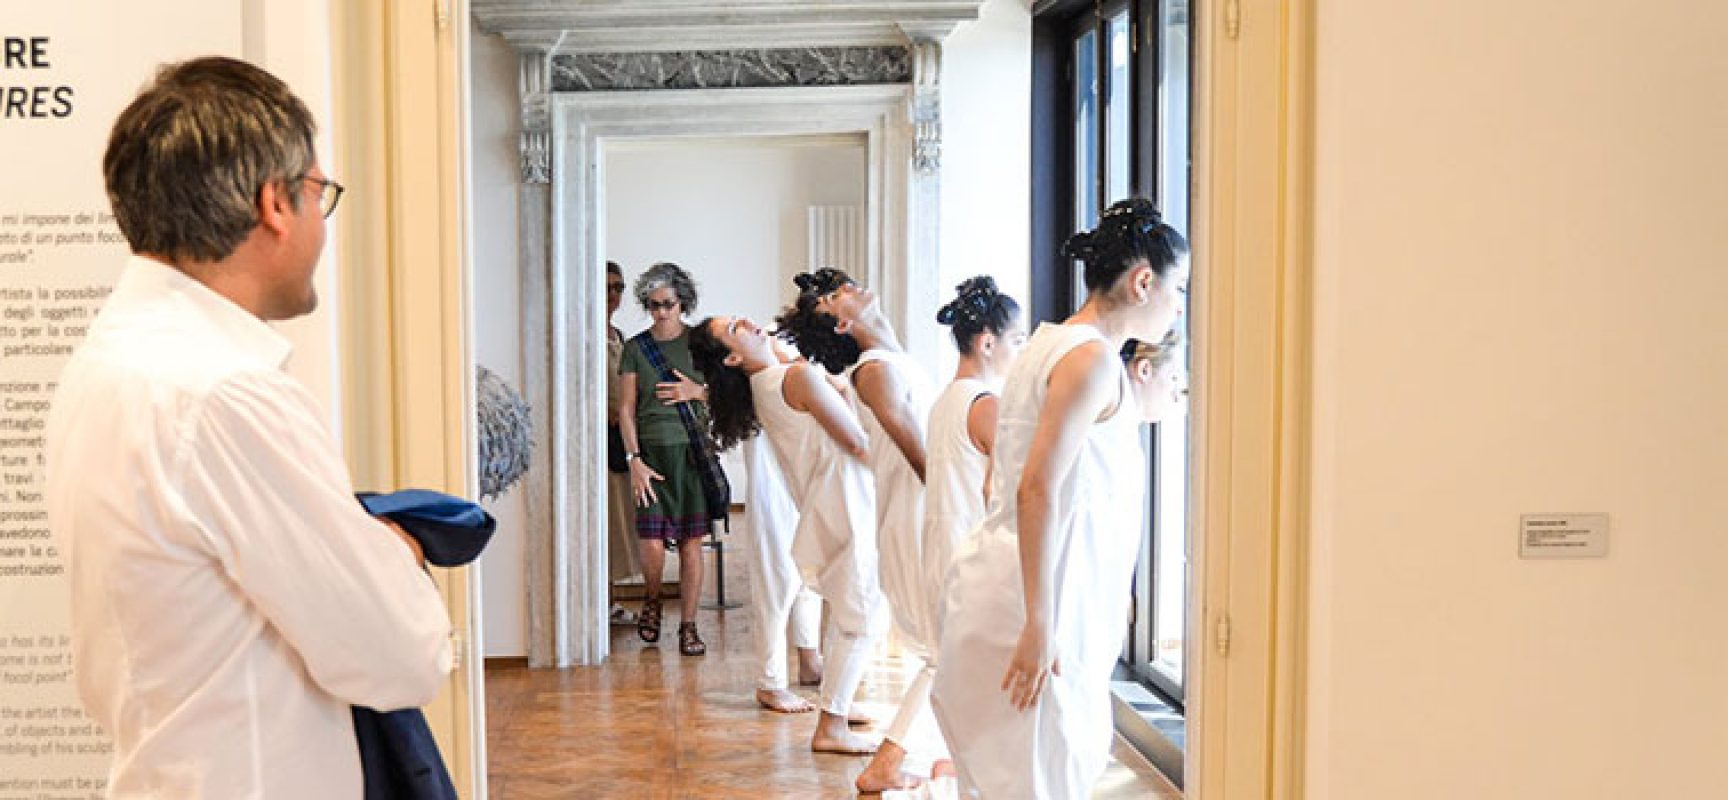 Successo per la Compagnia Menhir a Venezia, Angarano: “Una straordinaria emozione” / FOTO